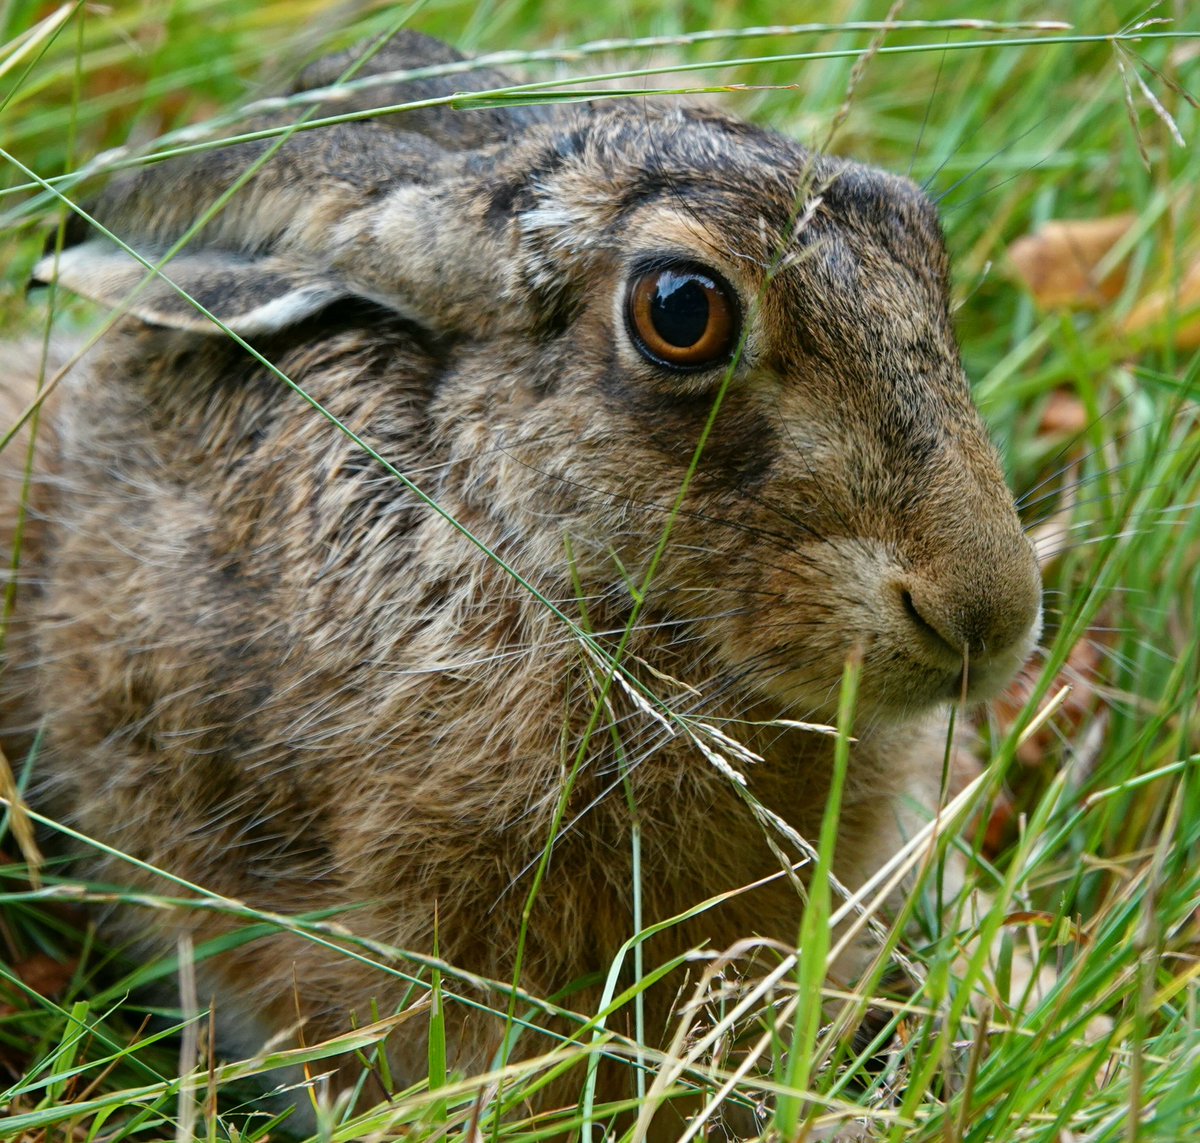 Hare at harvest. Althorp estate.
Conservation@althorp.com #hare #harvest #althorpestate #organic